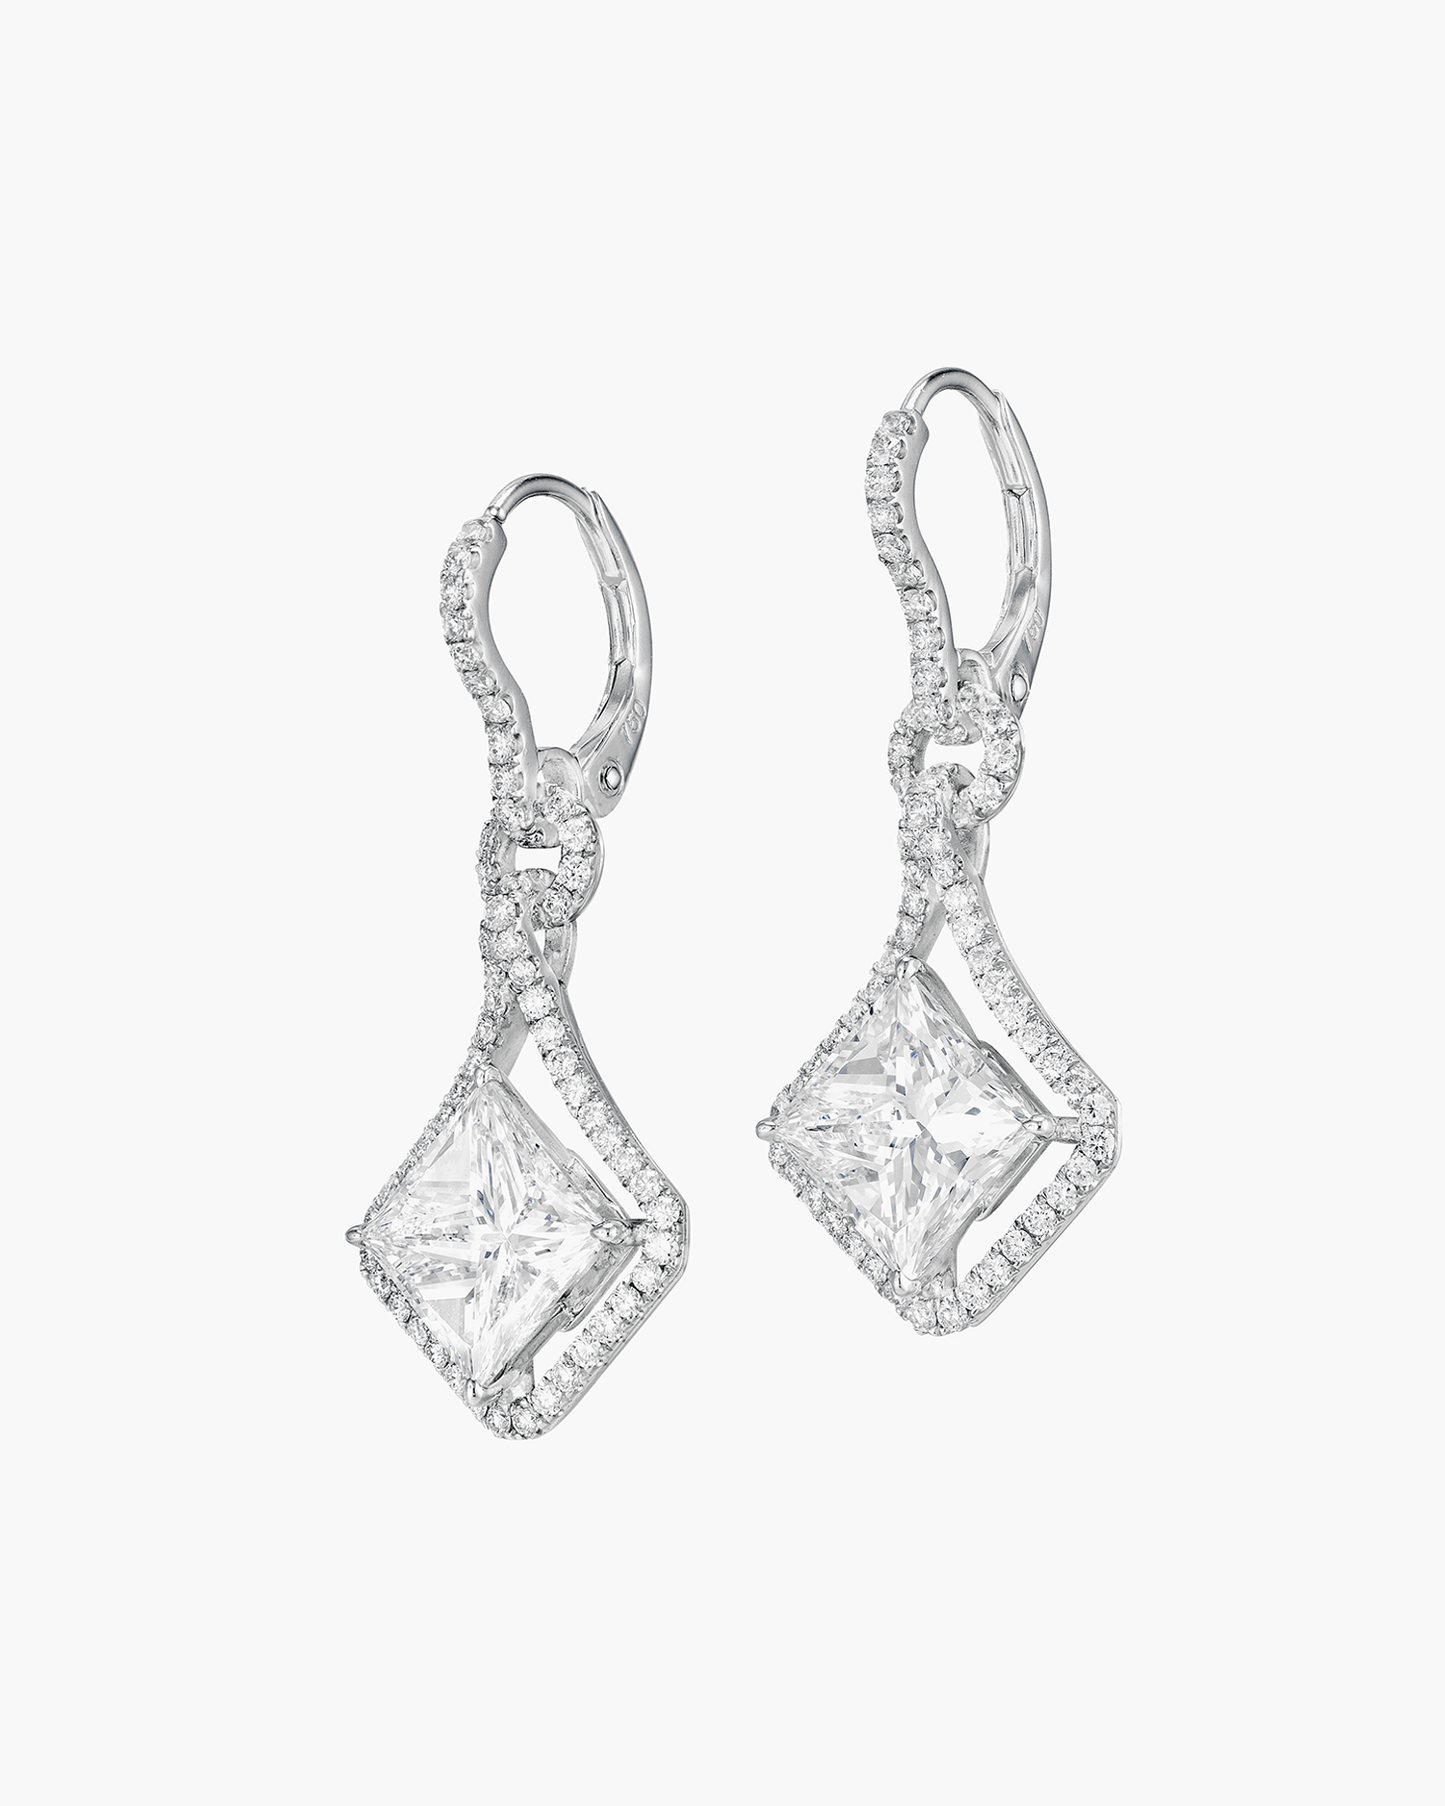 4.19 carat Princess Cut Diamond Earrings